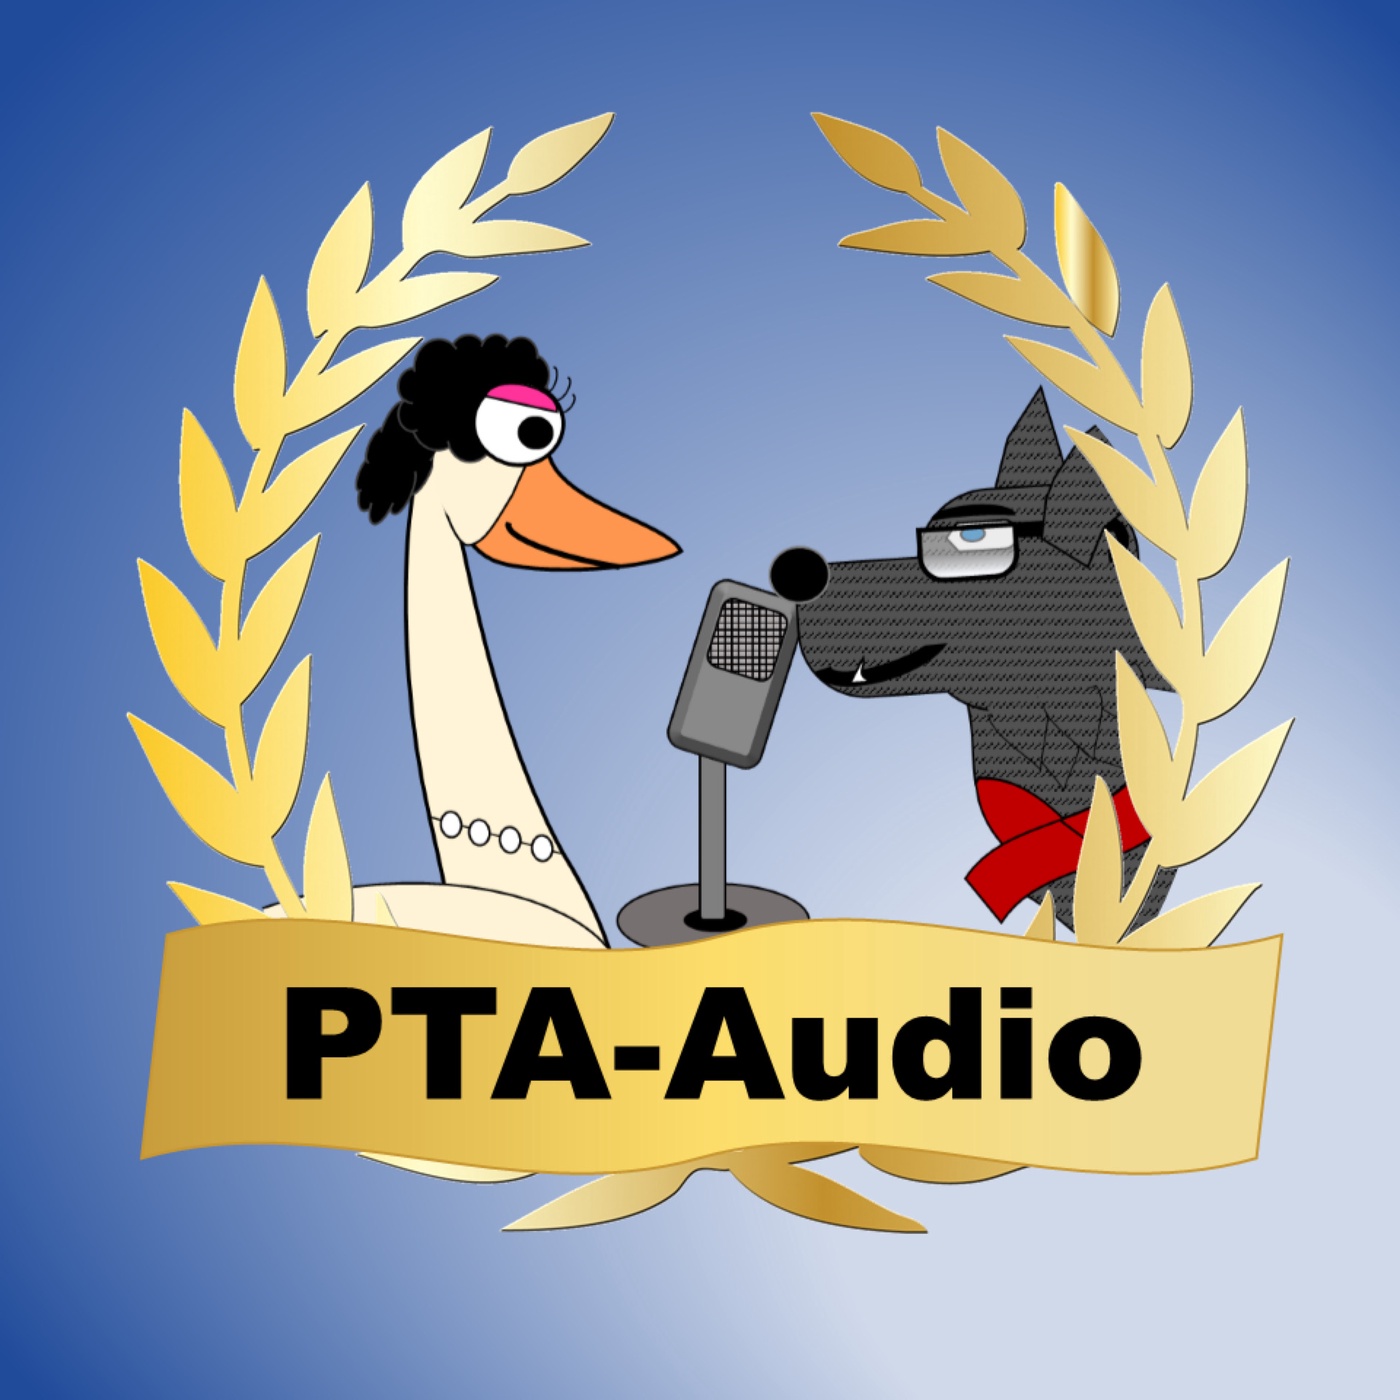 PTA-Audio